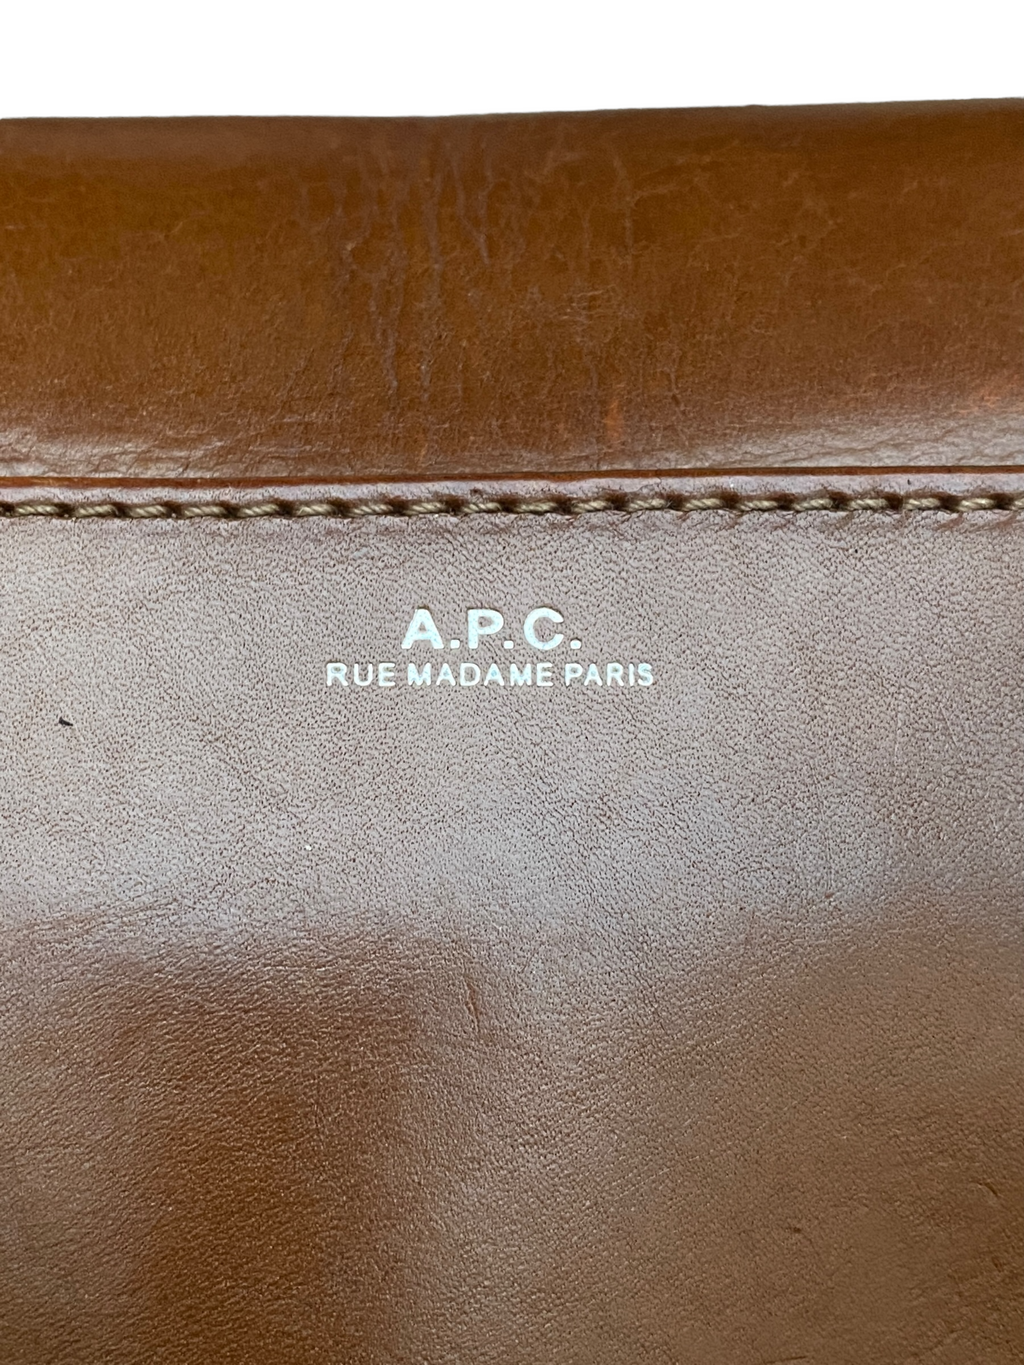 Superb Square Brown leather handbag bag